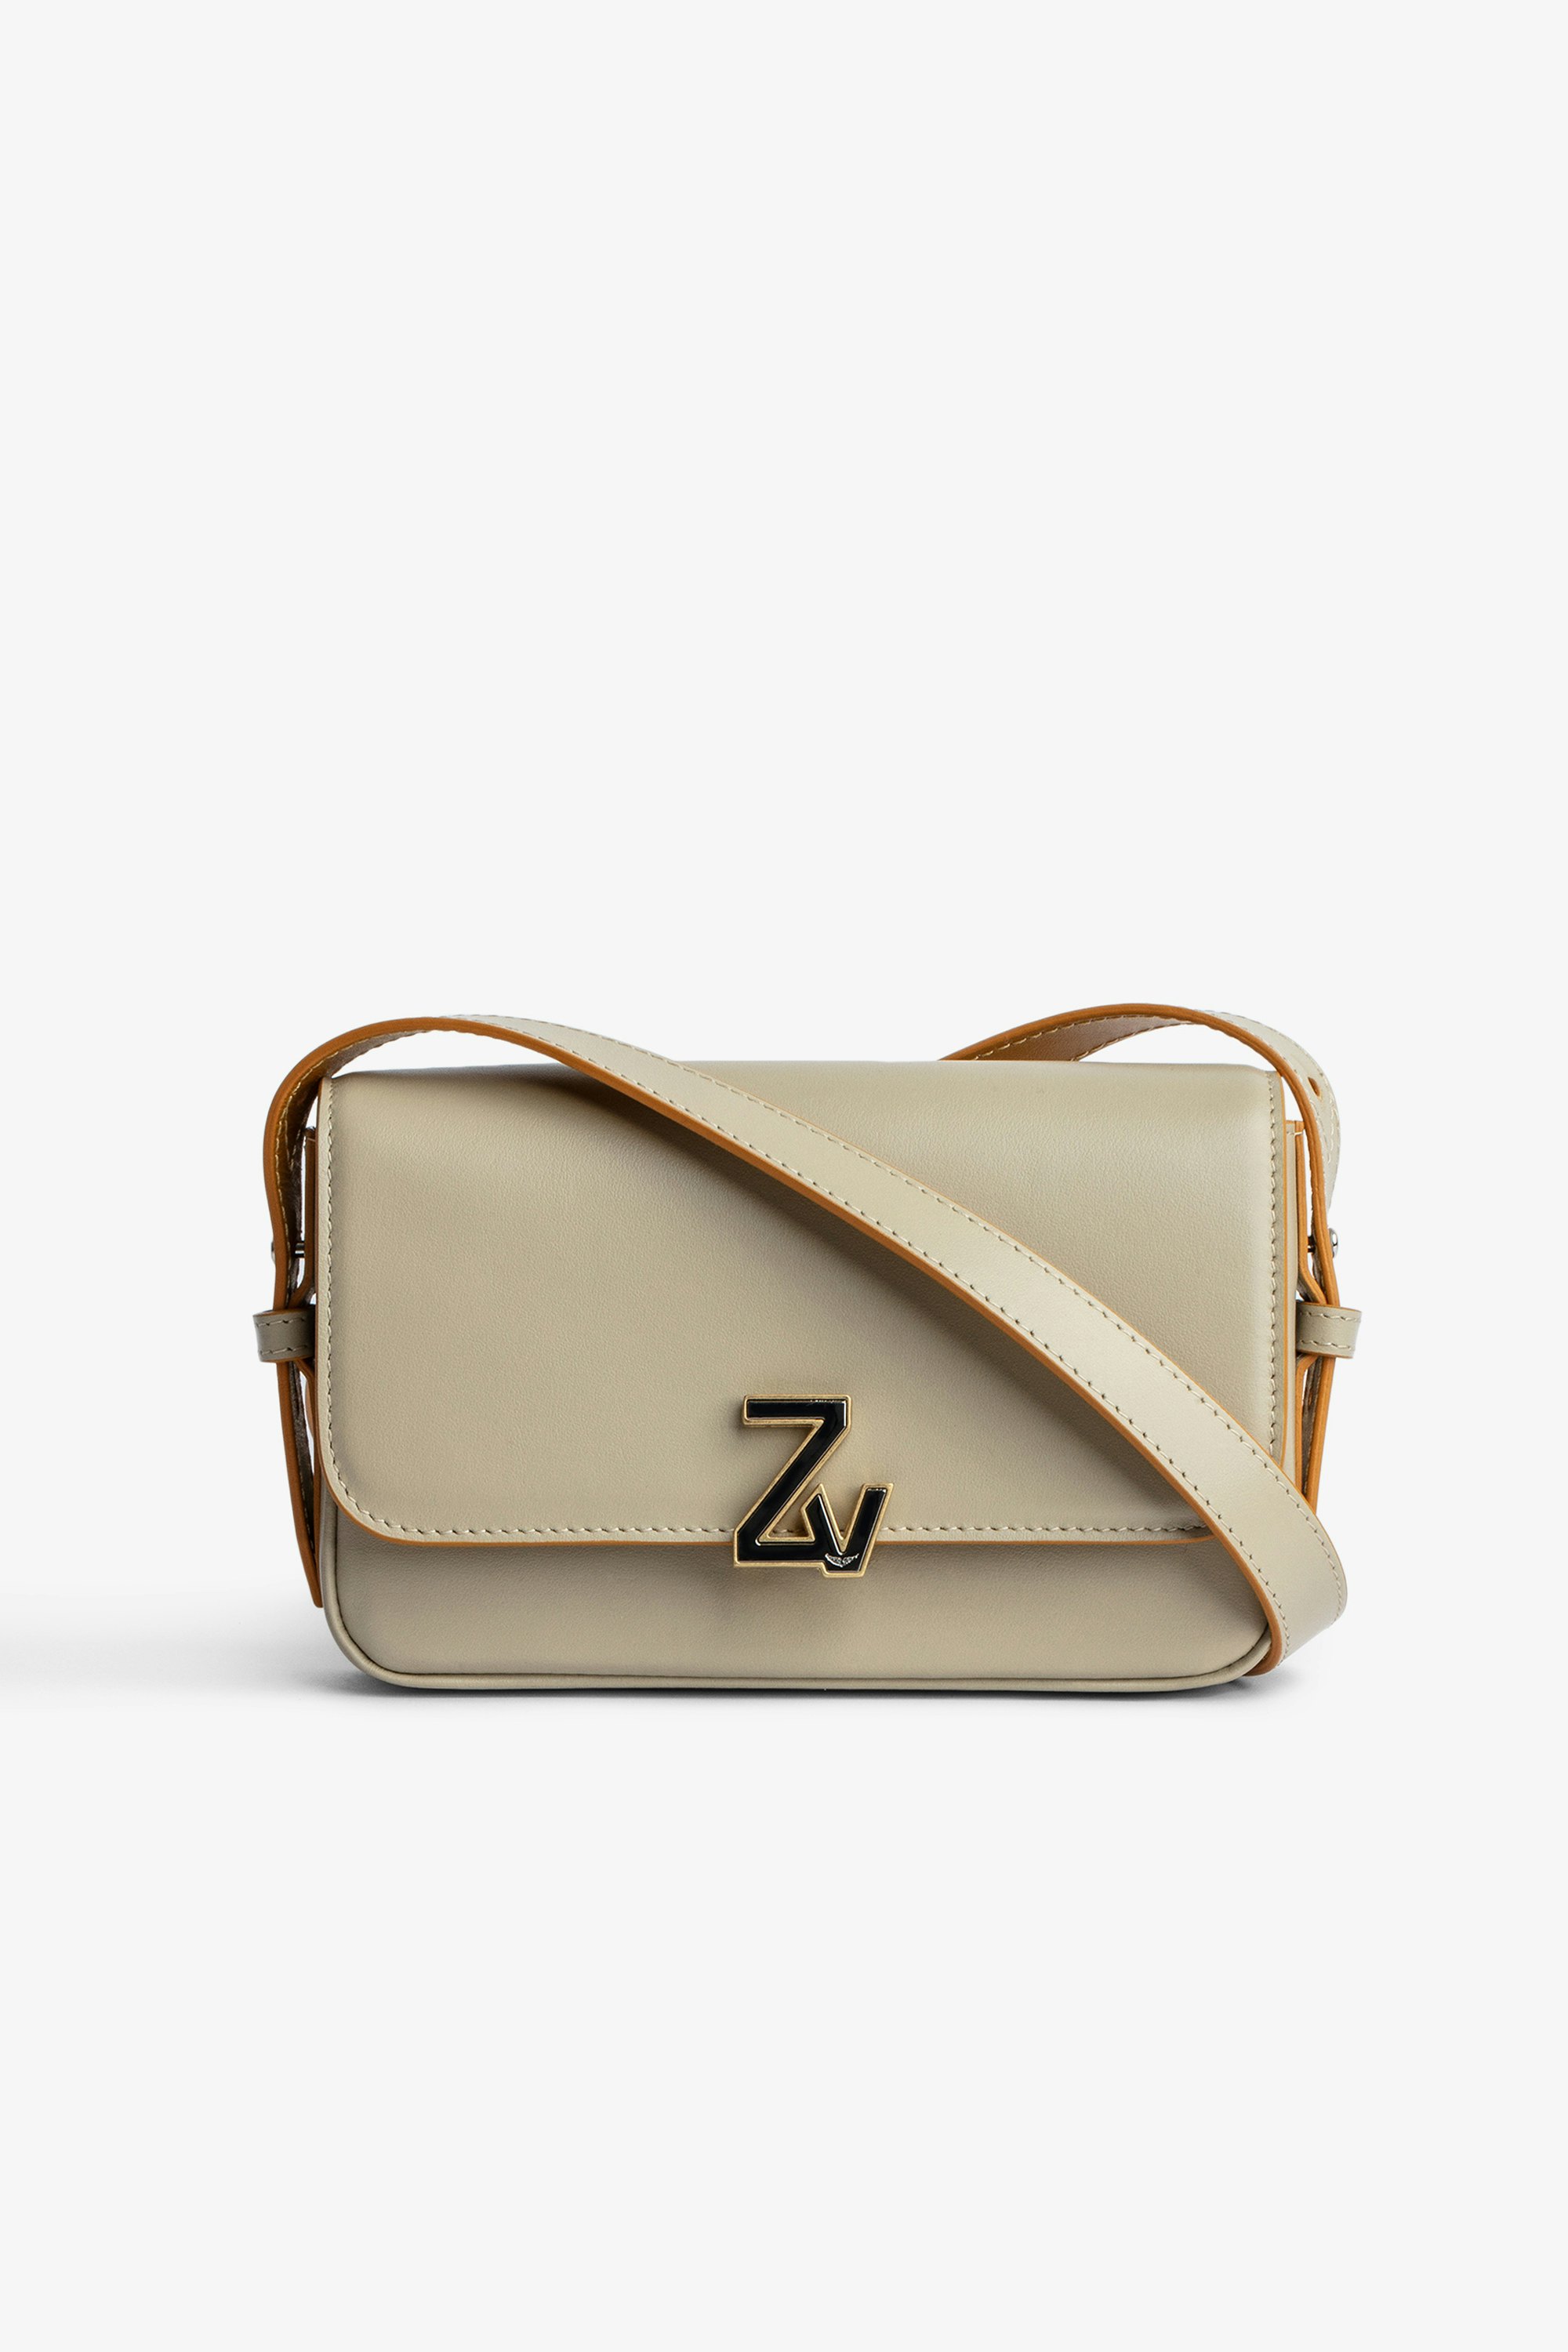 Borsa ZV Initiale Le Mini Piccola borsa in pelle liscia beige con patta e chiusura ZV con tracolla donna